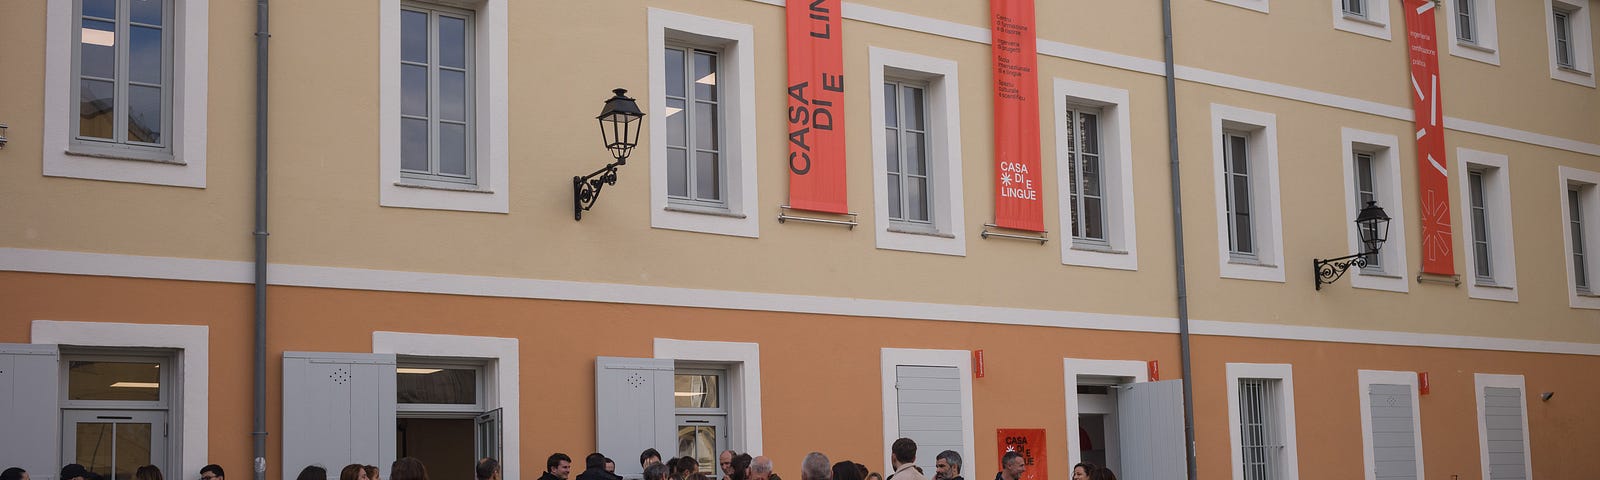 A crowd gathers outside Casa di e lingue, a mother-tongue institute in Bastia, Corsica